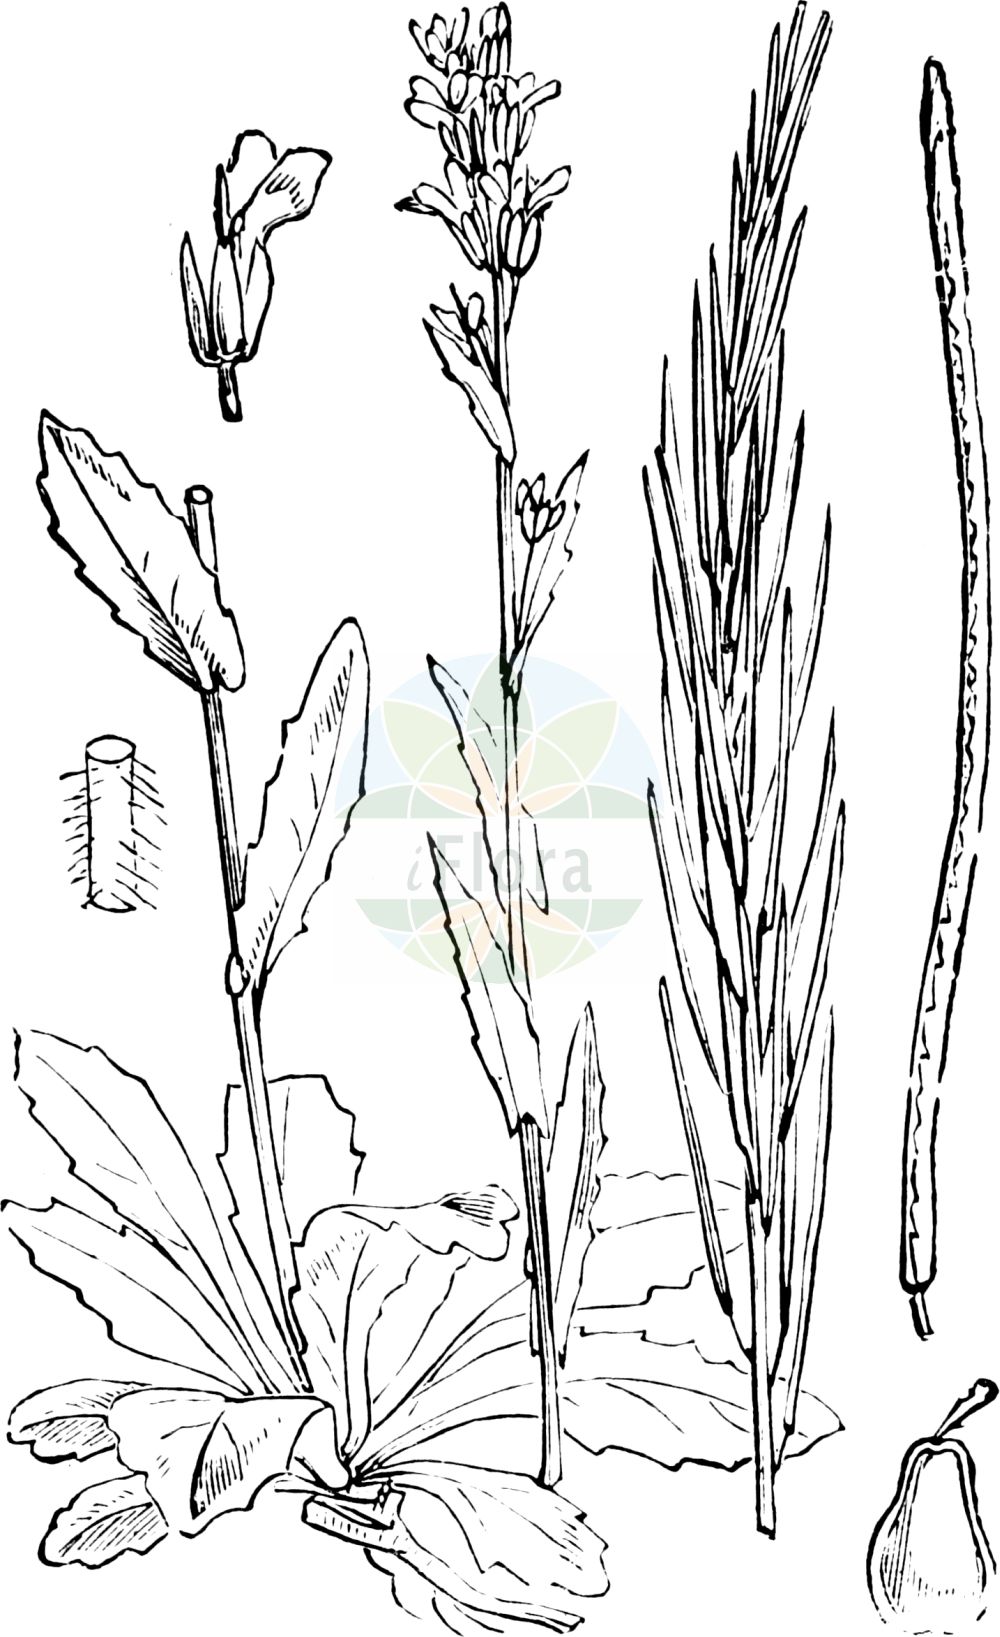 Historische Abbildung von Arabis hirsuta (Behaarte Gänsekresse - Hairy Rock-cress). Das Bild zeigt Blatt, Bluete, Frucht und Same. ---- Historical Drawing of Arabis hirsuta (Behaarte Gänsekresse - Hairy Rock-cress). The image is showing leaf, flower, fruit and seed.(Arabis hirsuta,Behaarte Gänsekresse,Hairy Rock-cress,Arabis brownii,Arabis ciliata,Arabis hirsuta,Arabis hirsuta (L.) Scop.,Arabis ovata,Turritis hirsuta,Behaarte Gaensekresse,Behaarte Gaensekresse,Hairy Rock-cress,Arabis,Gänsekresse,Rockcress,Brassicaceae,Kreuzblütler,Cabbage family,Blatt,Bluete,Frucht,Same,leaf,flower,fruit,seed,Fitch et al. (1880))